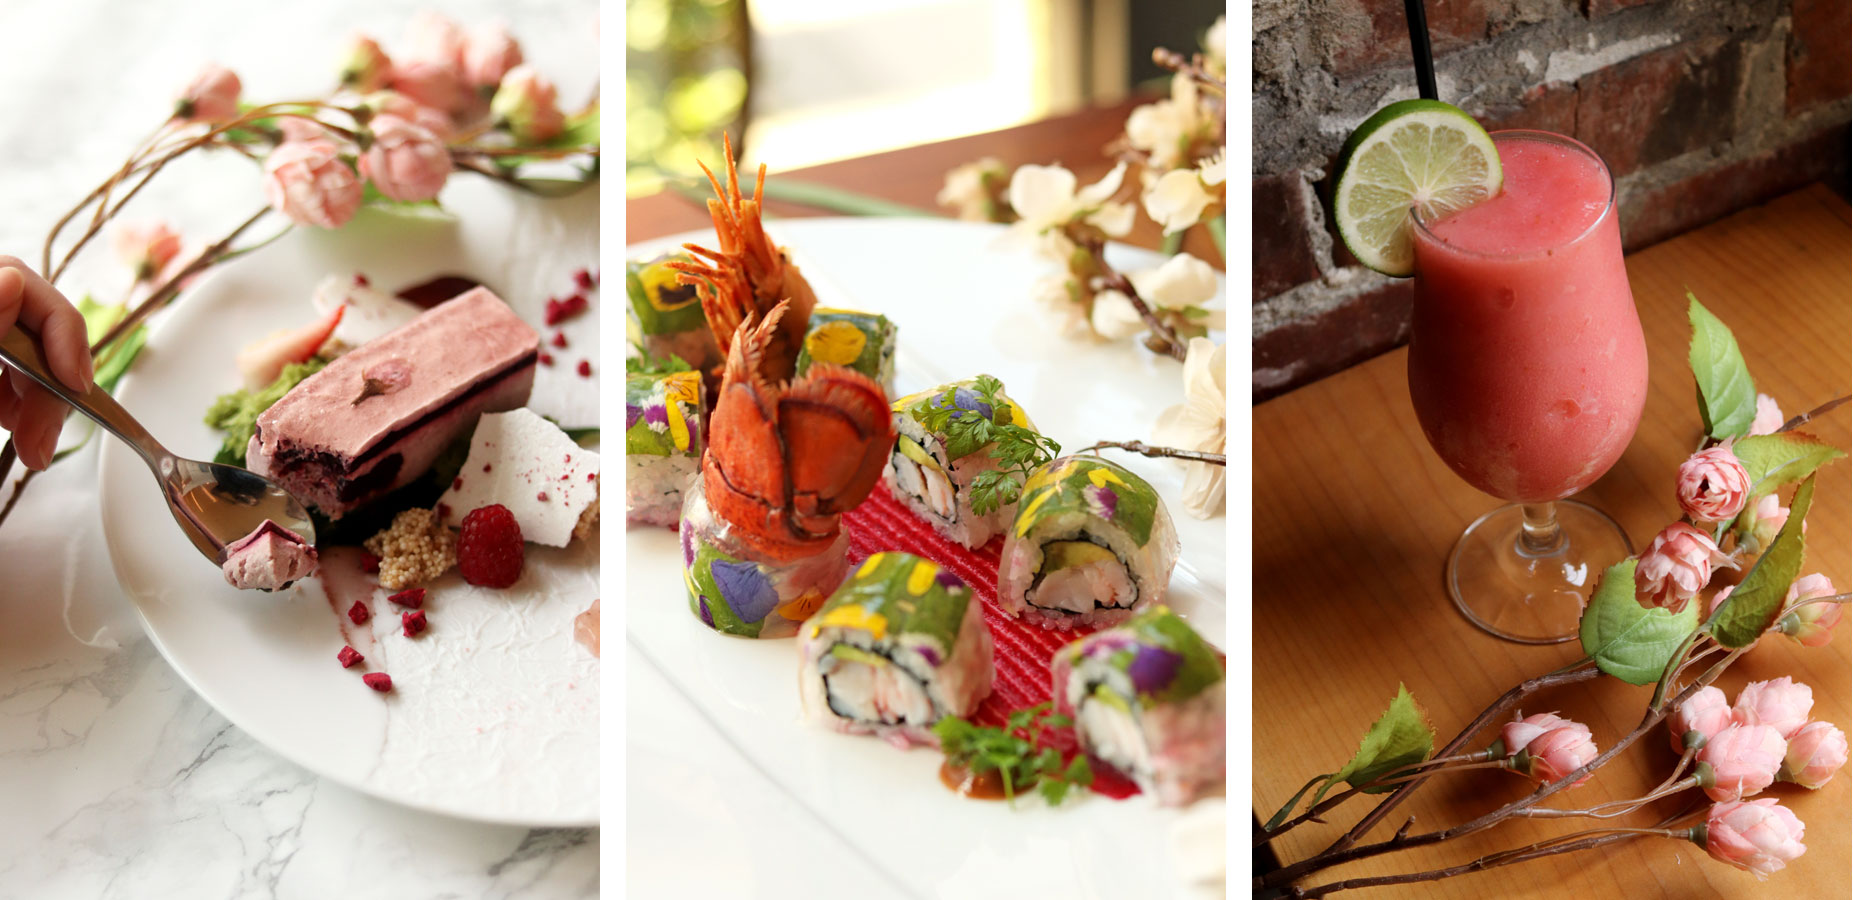 Sakura Season Inspires New Dishes And Drinks At Miku, Minami, And Gyoza Bar photo